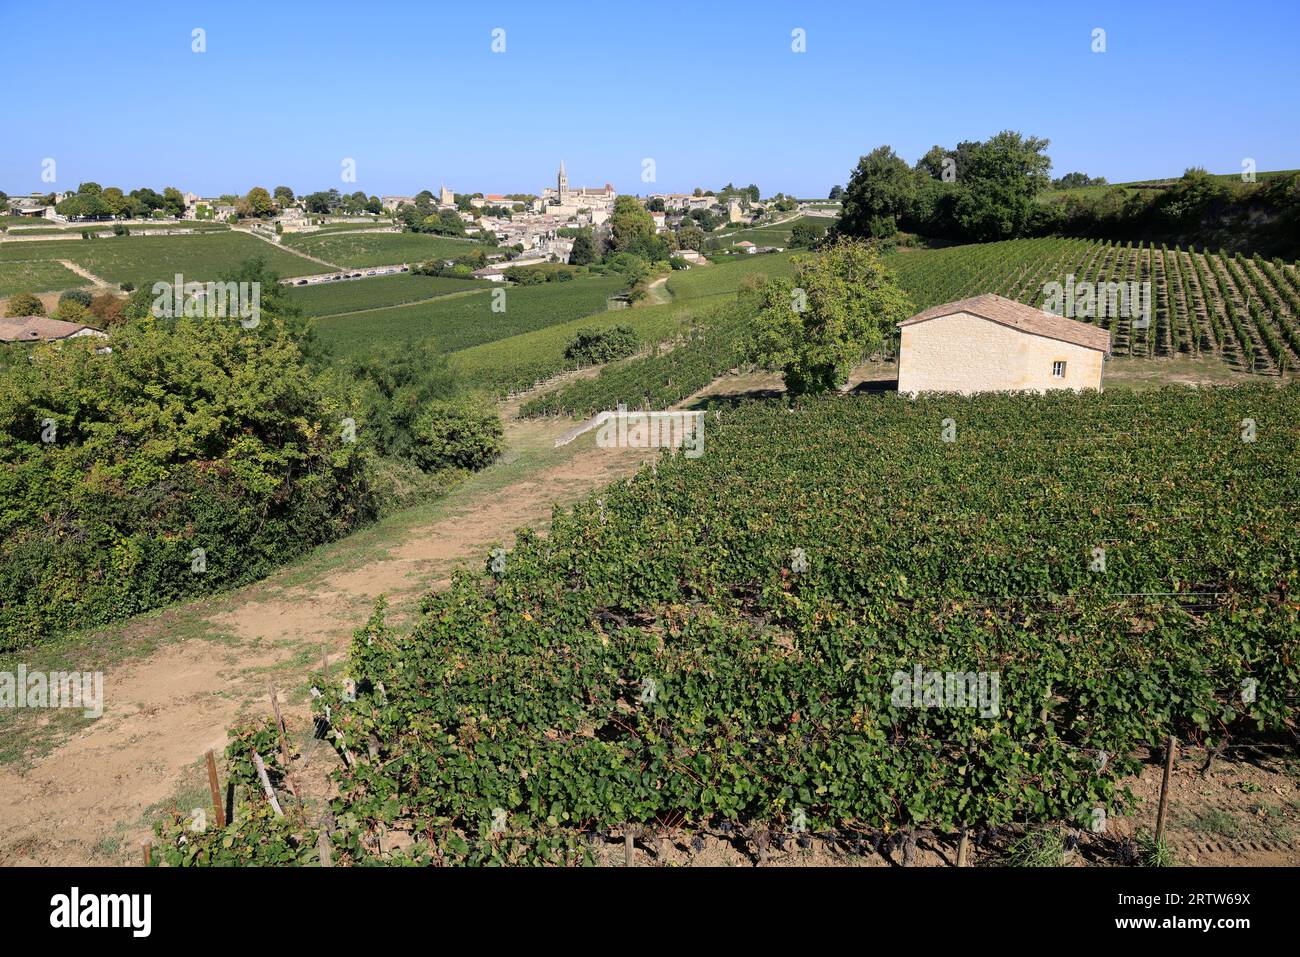 Saint-Émilion dans ses vignes et son vignoble rouge. Saint-Émilion est classé parmi les plus beaux villages de France. Viticulture, vin et t Banque D'Images